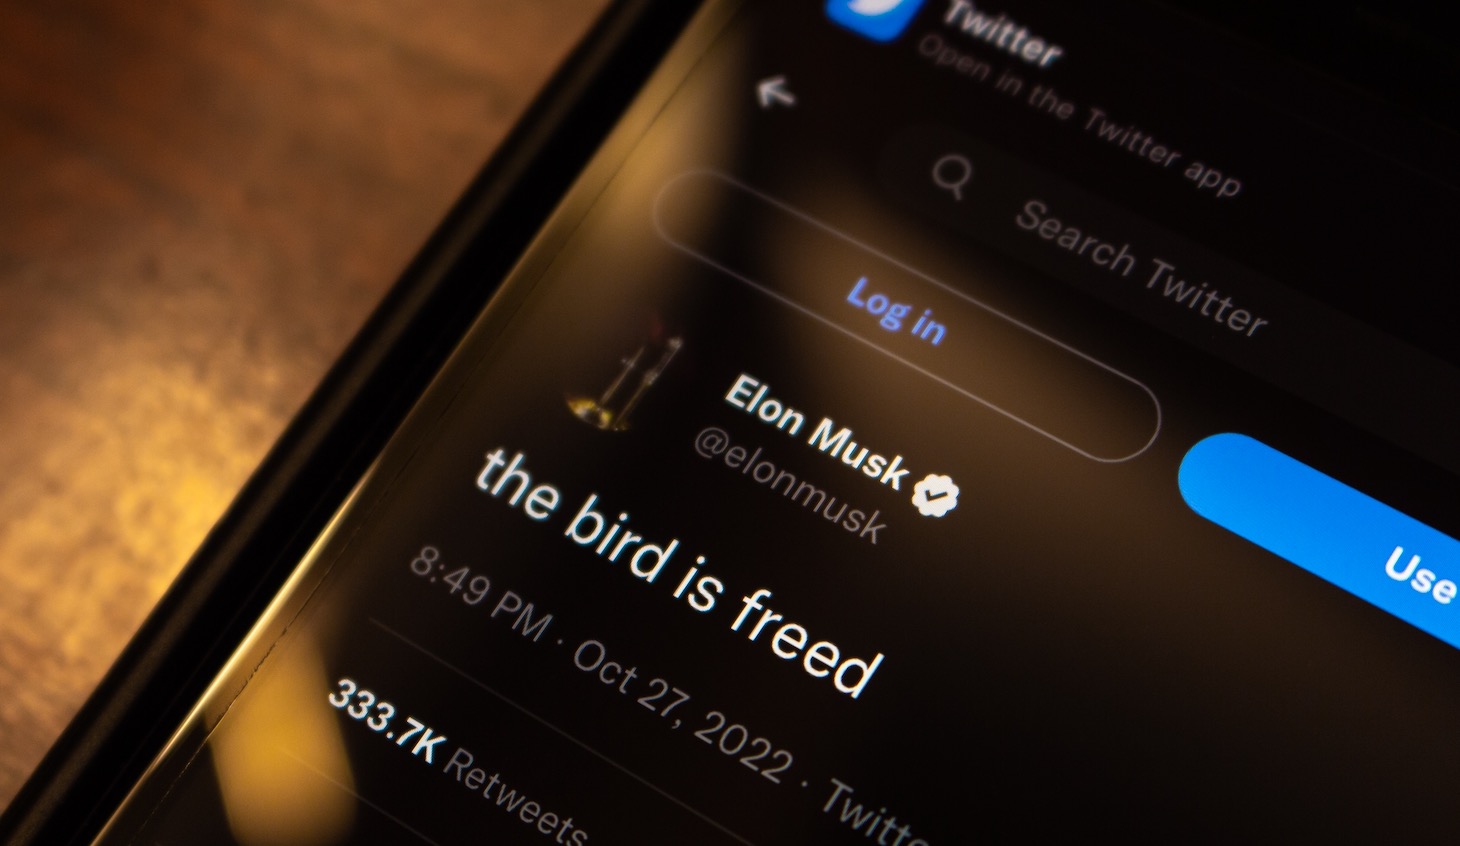 Twitter : Musk mise sur Blue et les annonceurs s'inquiètent 